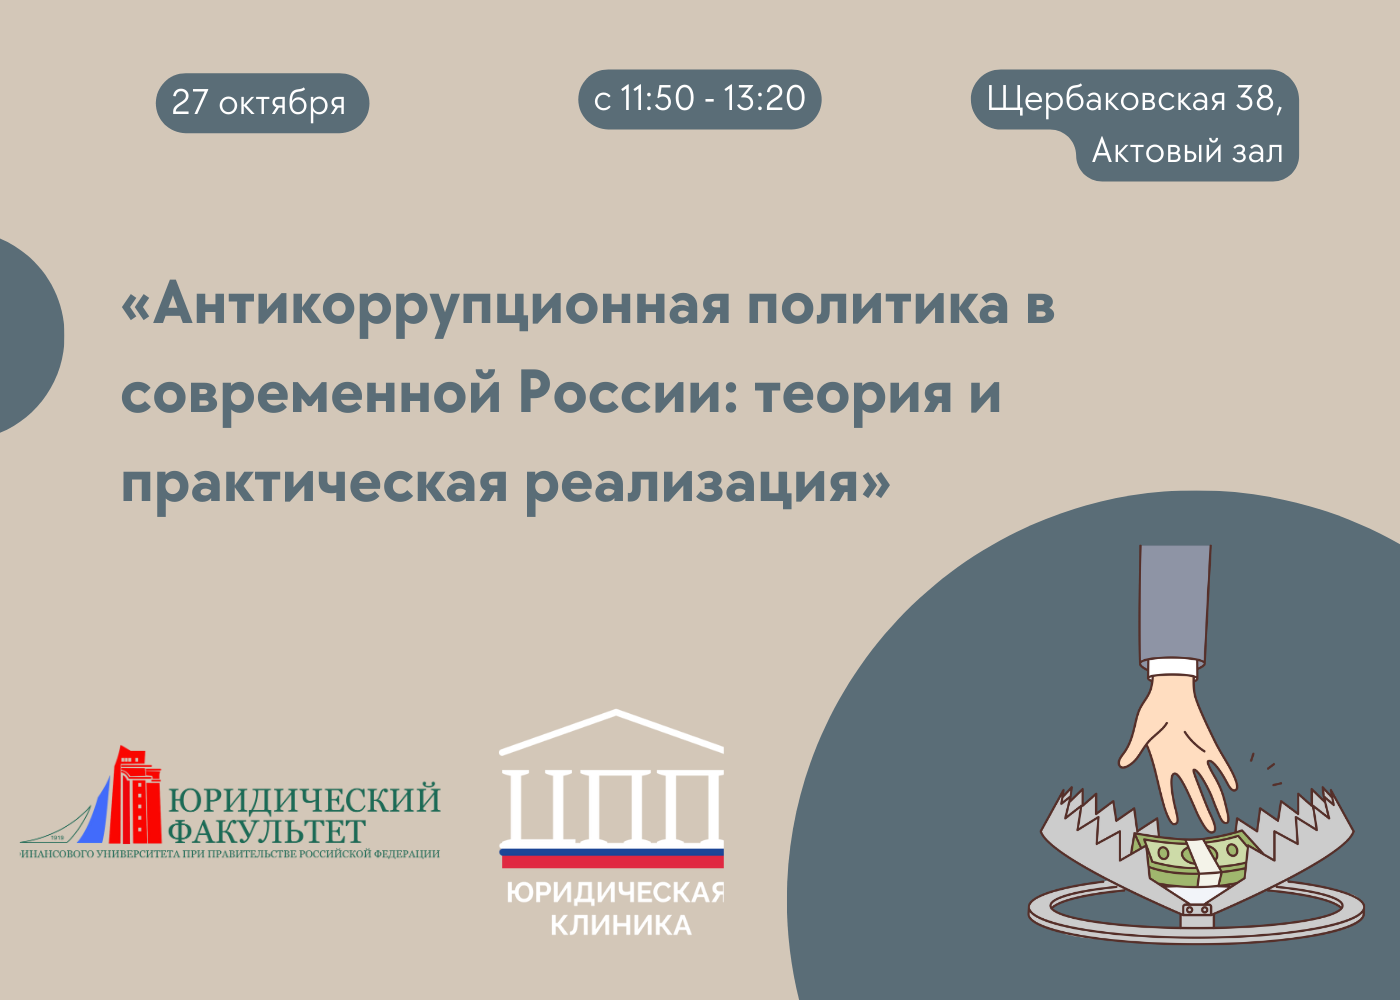 Научно-практический семинар на тему: «Антикоррупционная политика современной России: теория и практическая реализация».